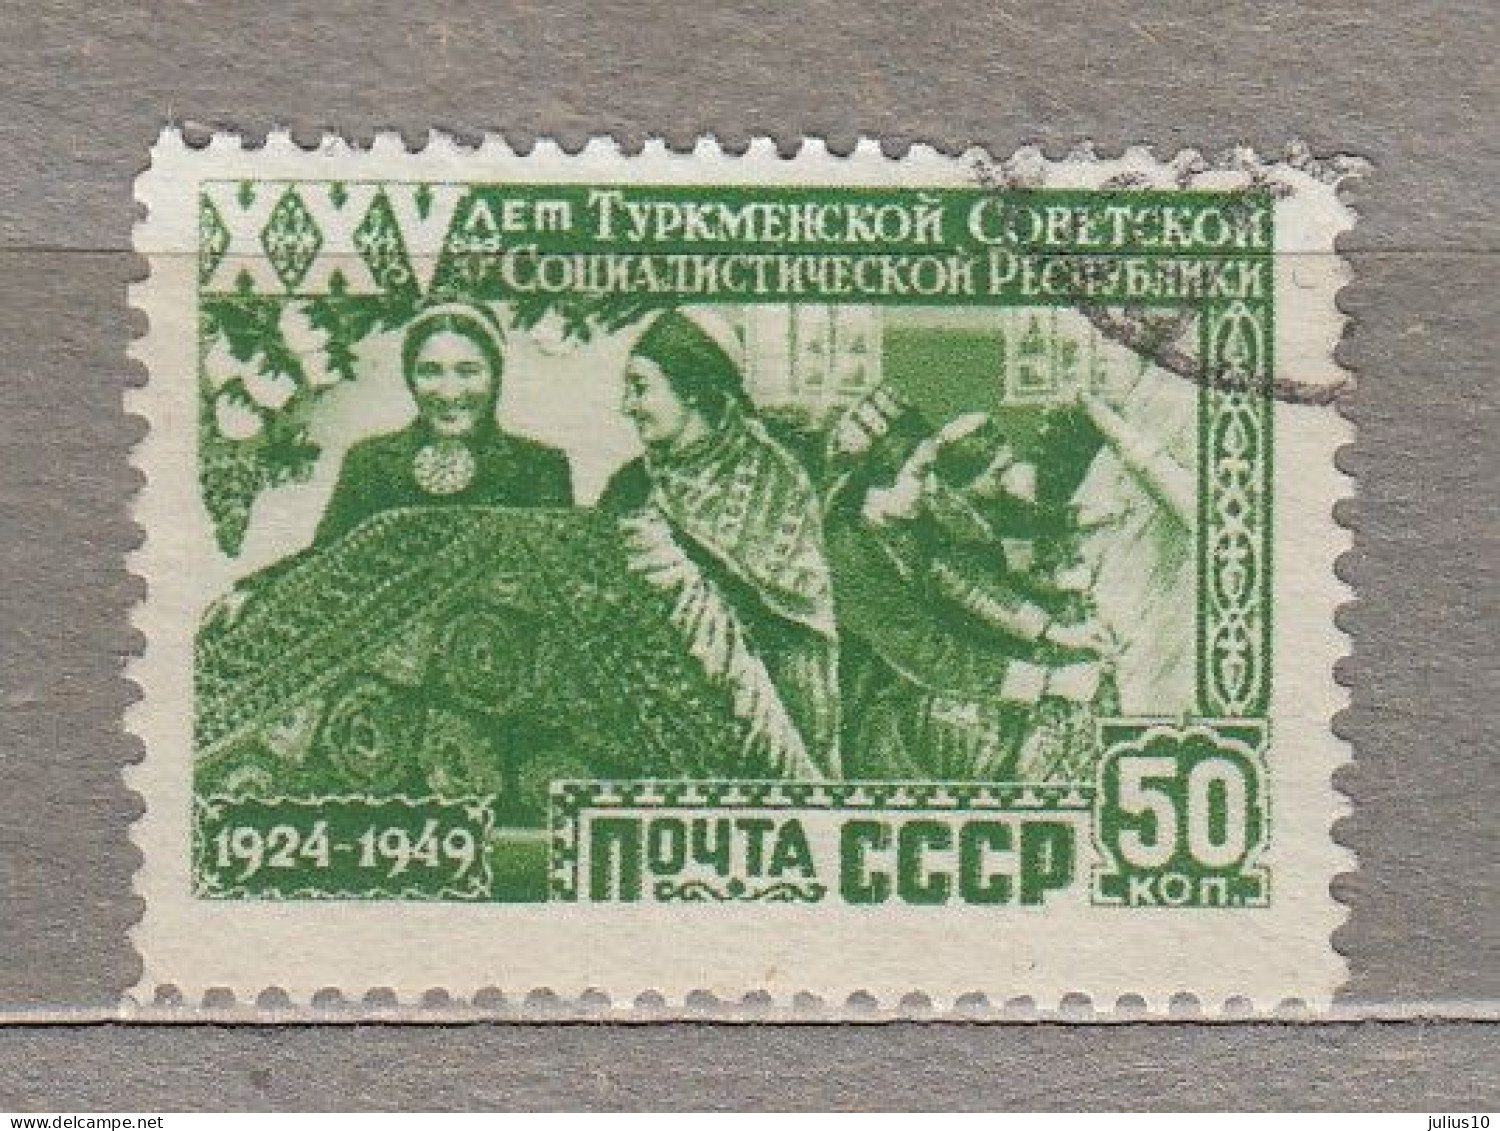 RUSSIA USSR 1950 Turkmenistan Used(o) Mi 1440 #Ru152 - Turkmenistán